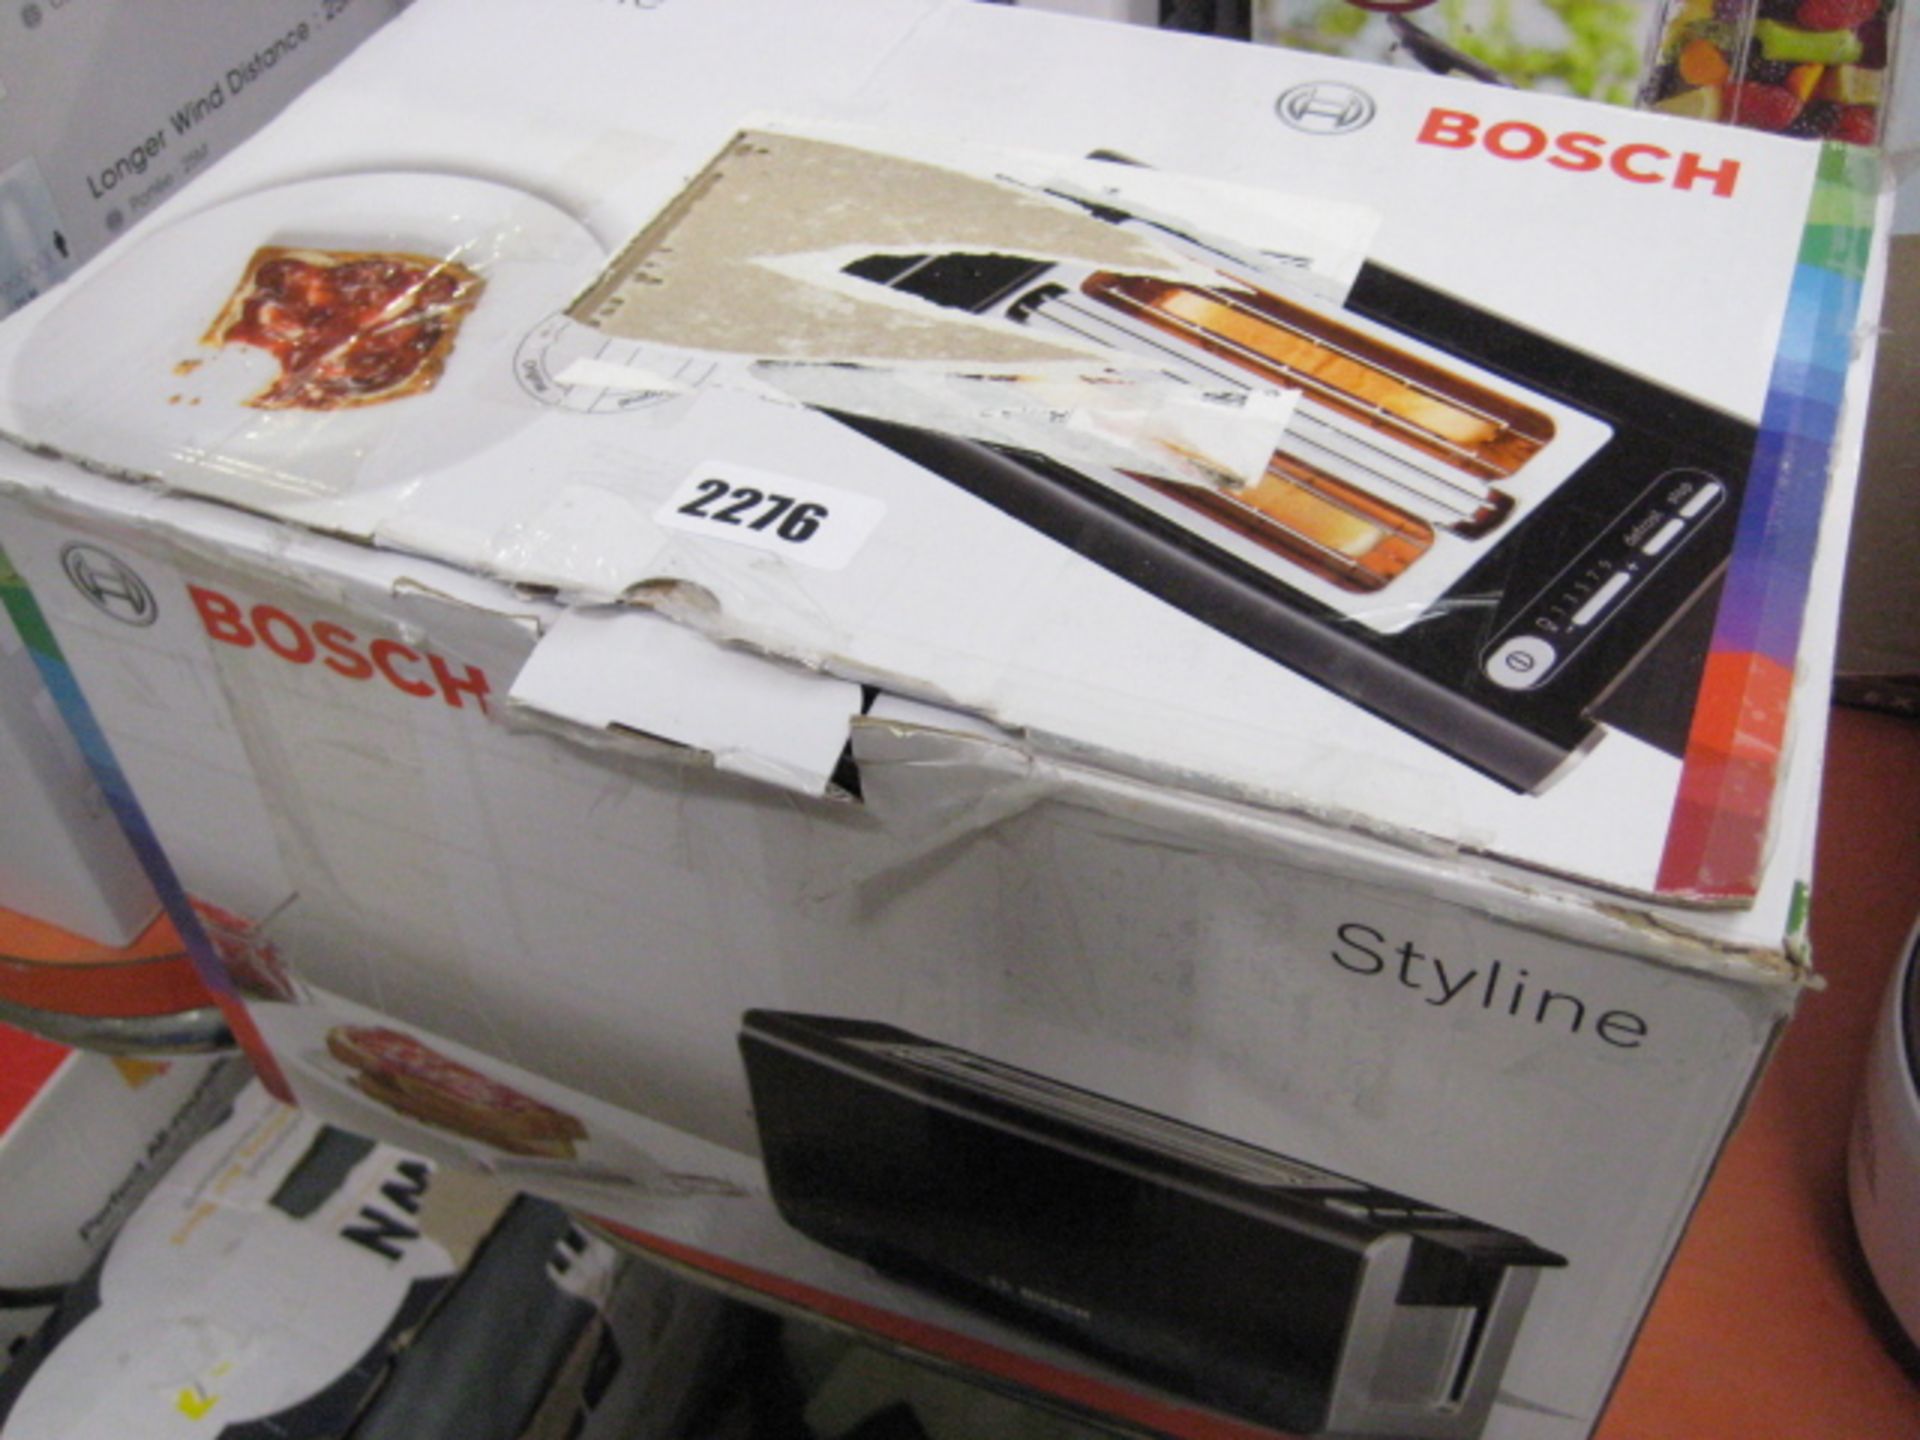 Bosch Styline toaster